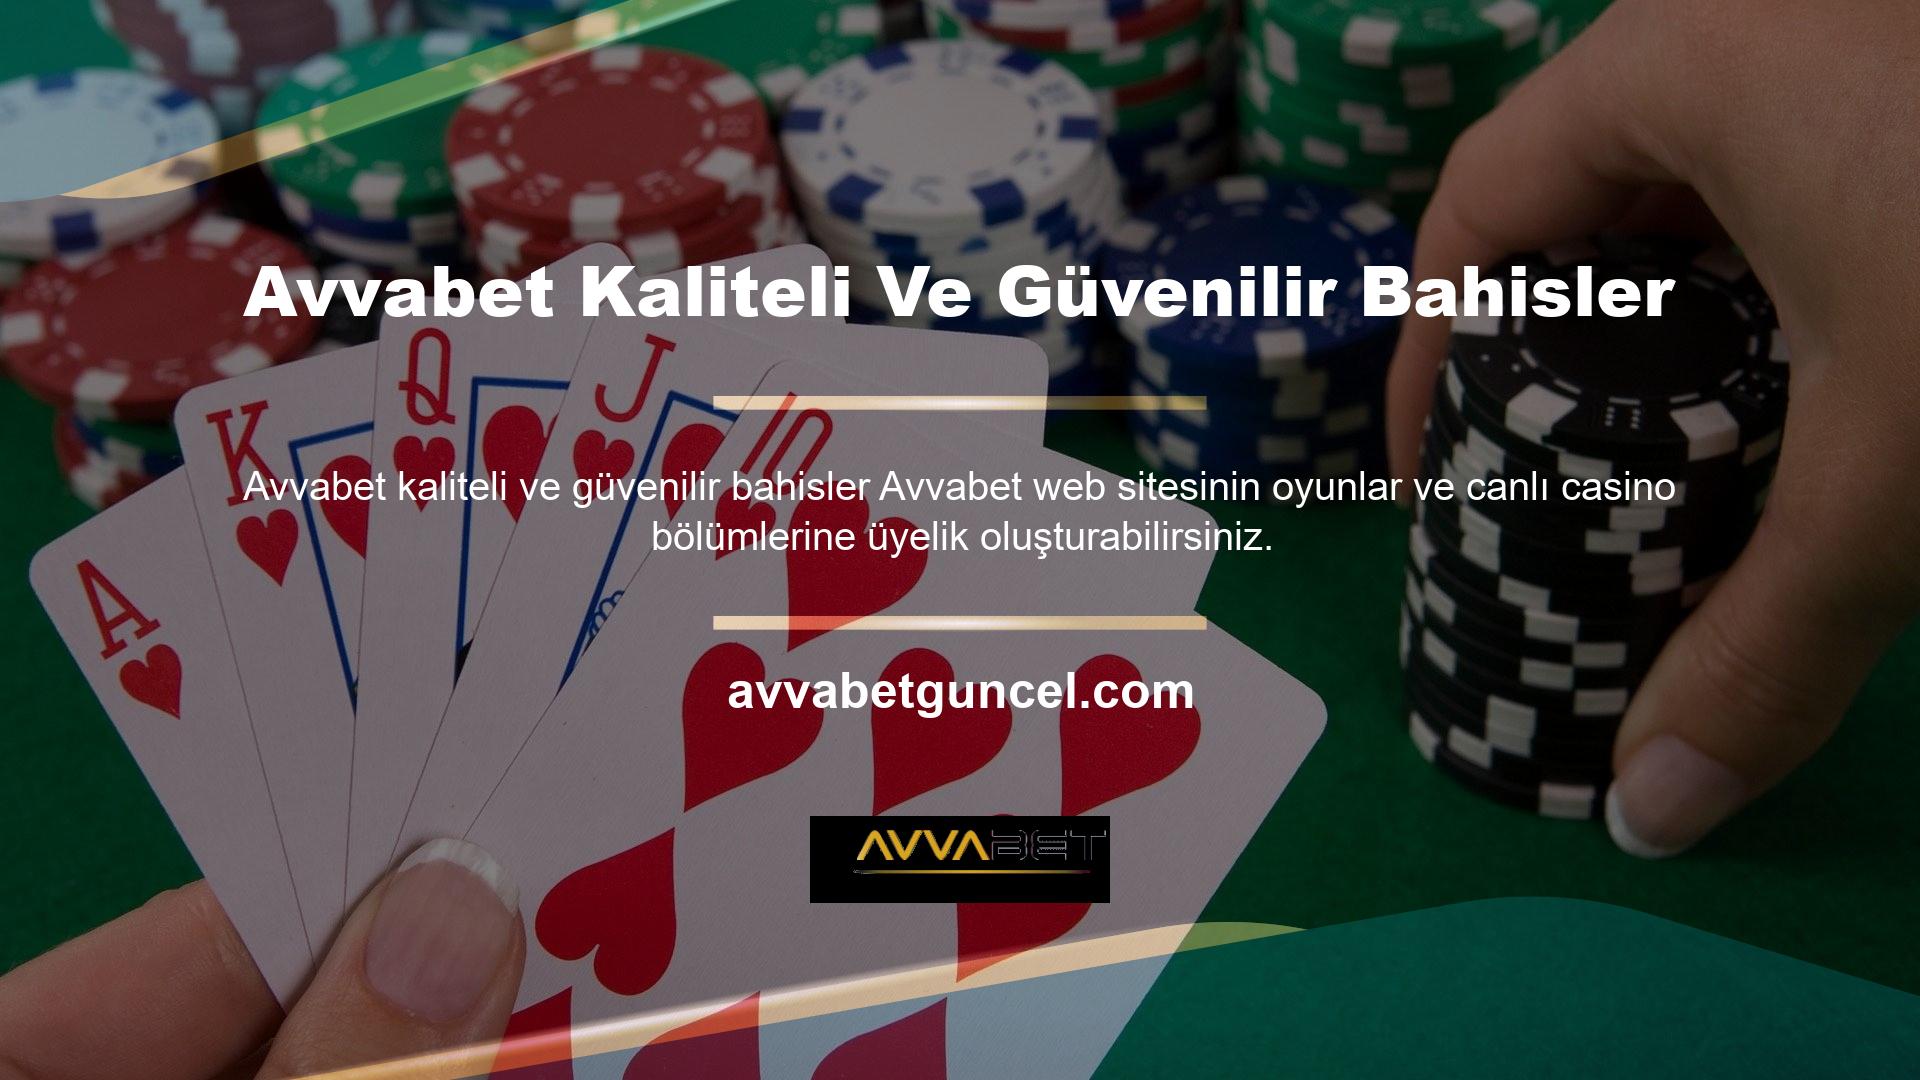 Avvabet oyun sitesi şu anda dünyanın birçok ülkesinde faaliyet göstermektedir ve önde gelen premium ve önemli oyun sitelerinden biri olarak Türkiye’nin önemli oyun pazarına girmiştir